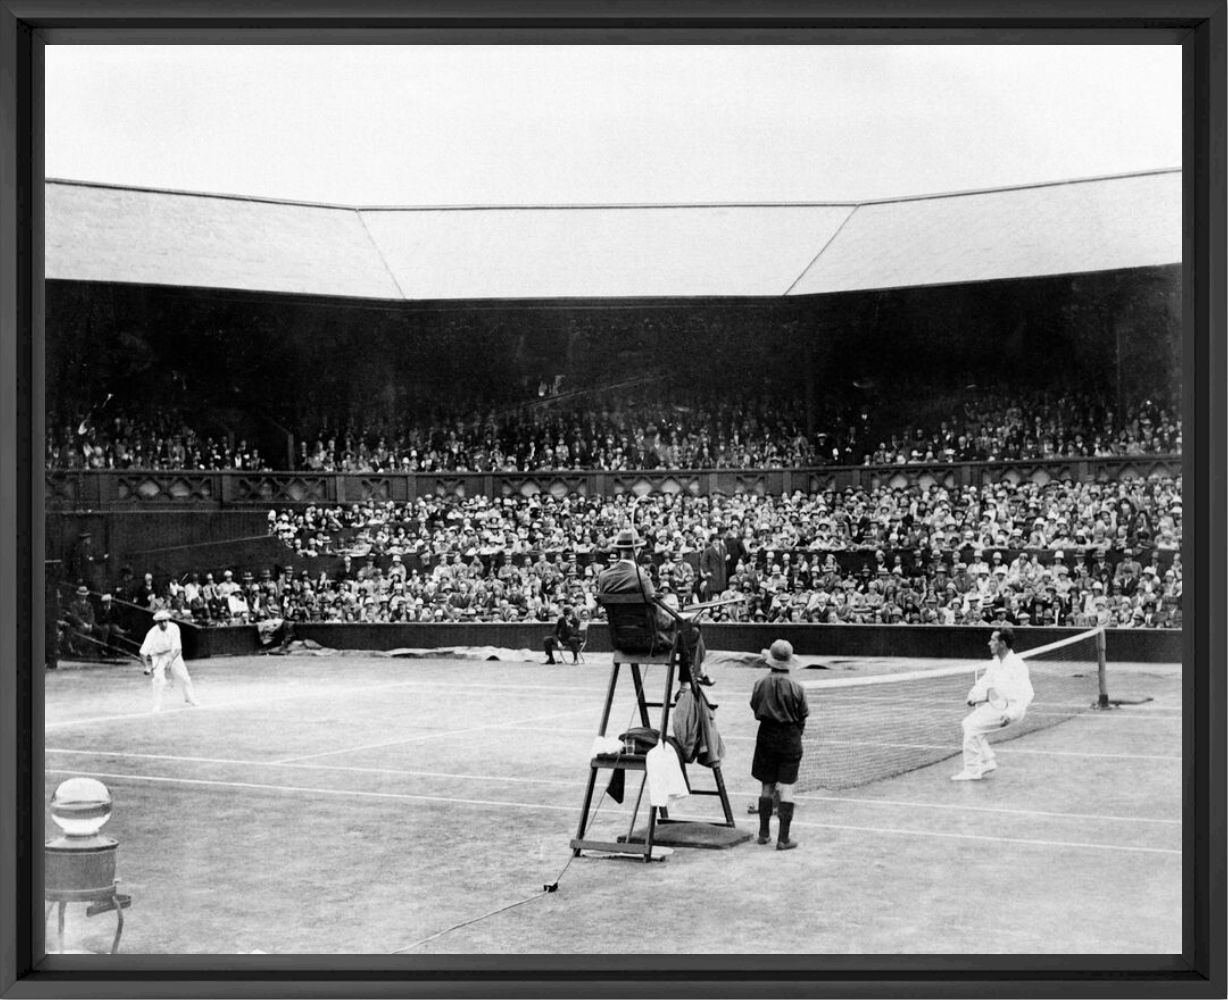 Photograph Les joueurs de tennis français Henri Cochet et René Lacoste s'affrontent lors du tournoi de tennis de Wimbledon en 1928 -  GAMMA AGENCY - Picture painting